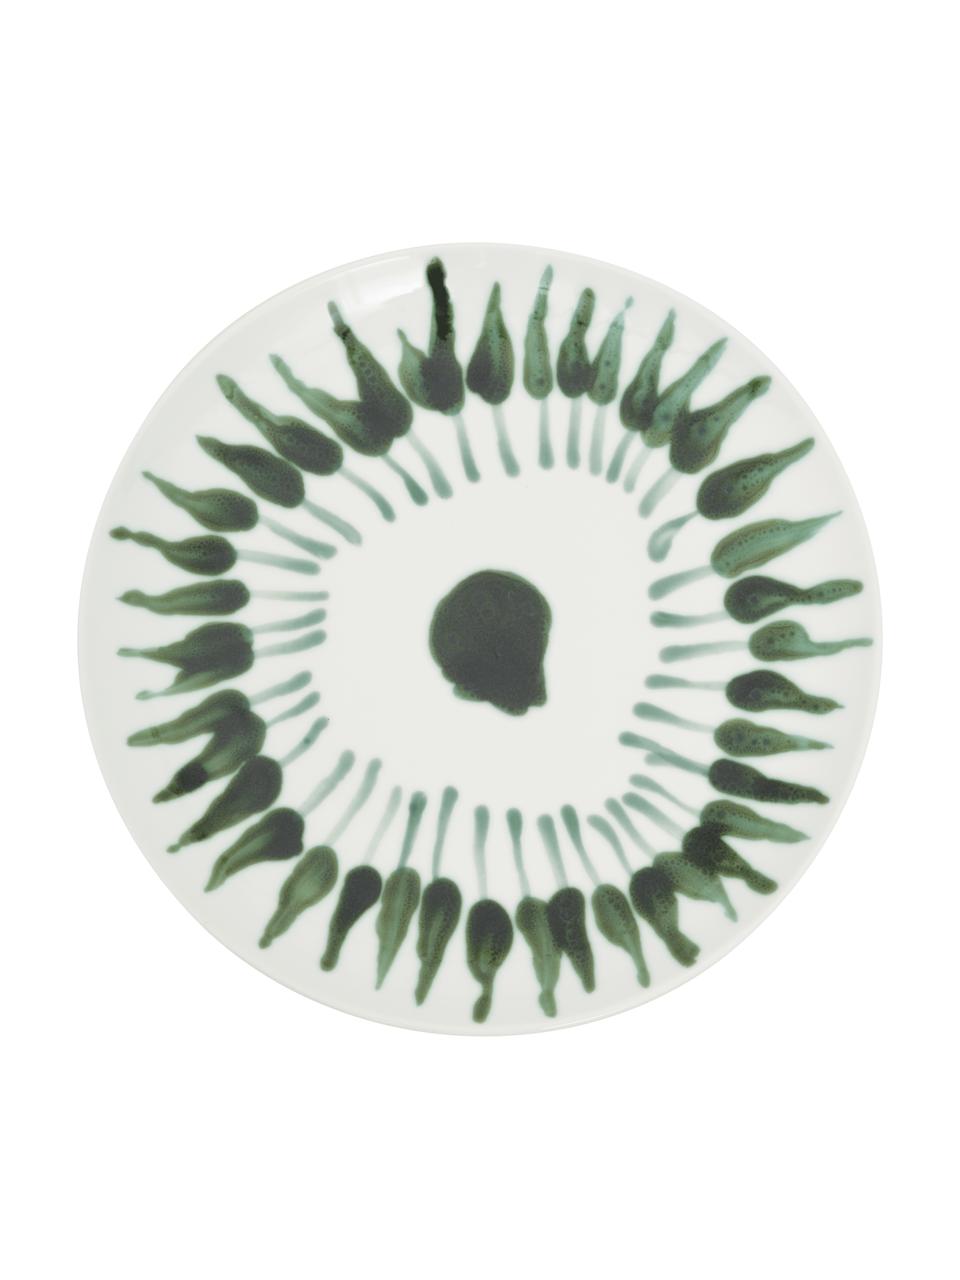 Handbemalter Speiseteller Sparks mit Pinselstrich-Dekor, Steingut, Weiß, Grün, Ø 28 cm